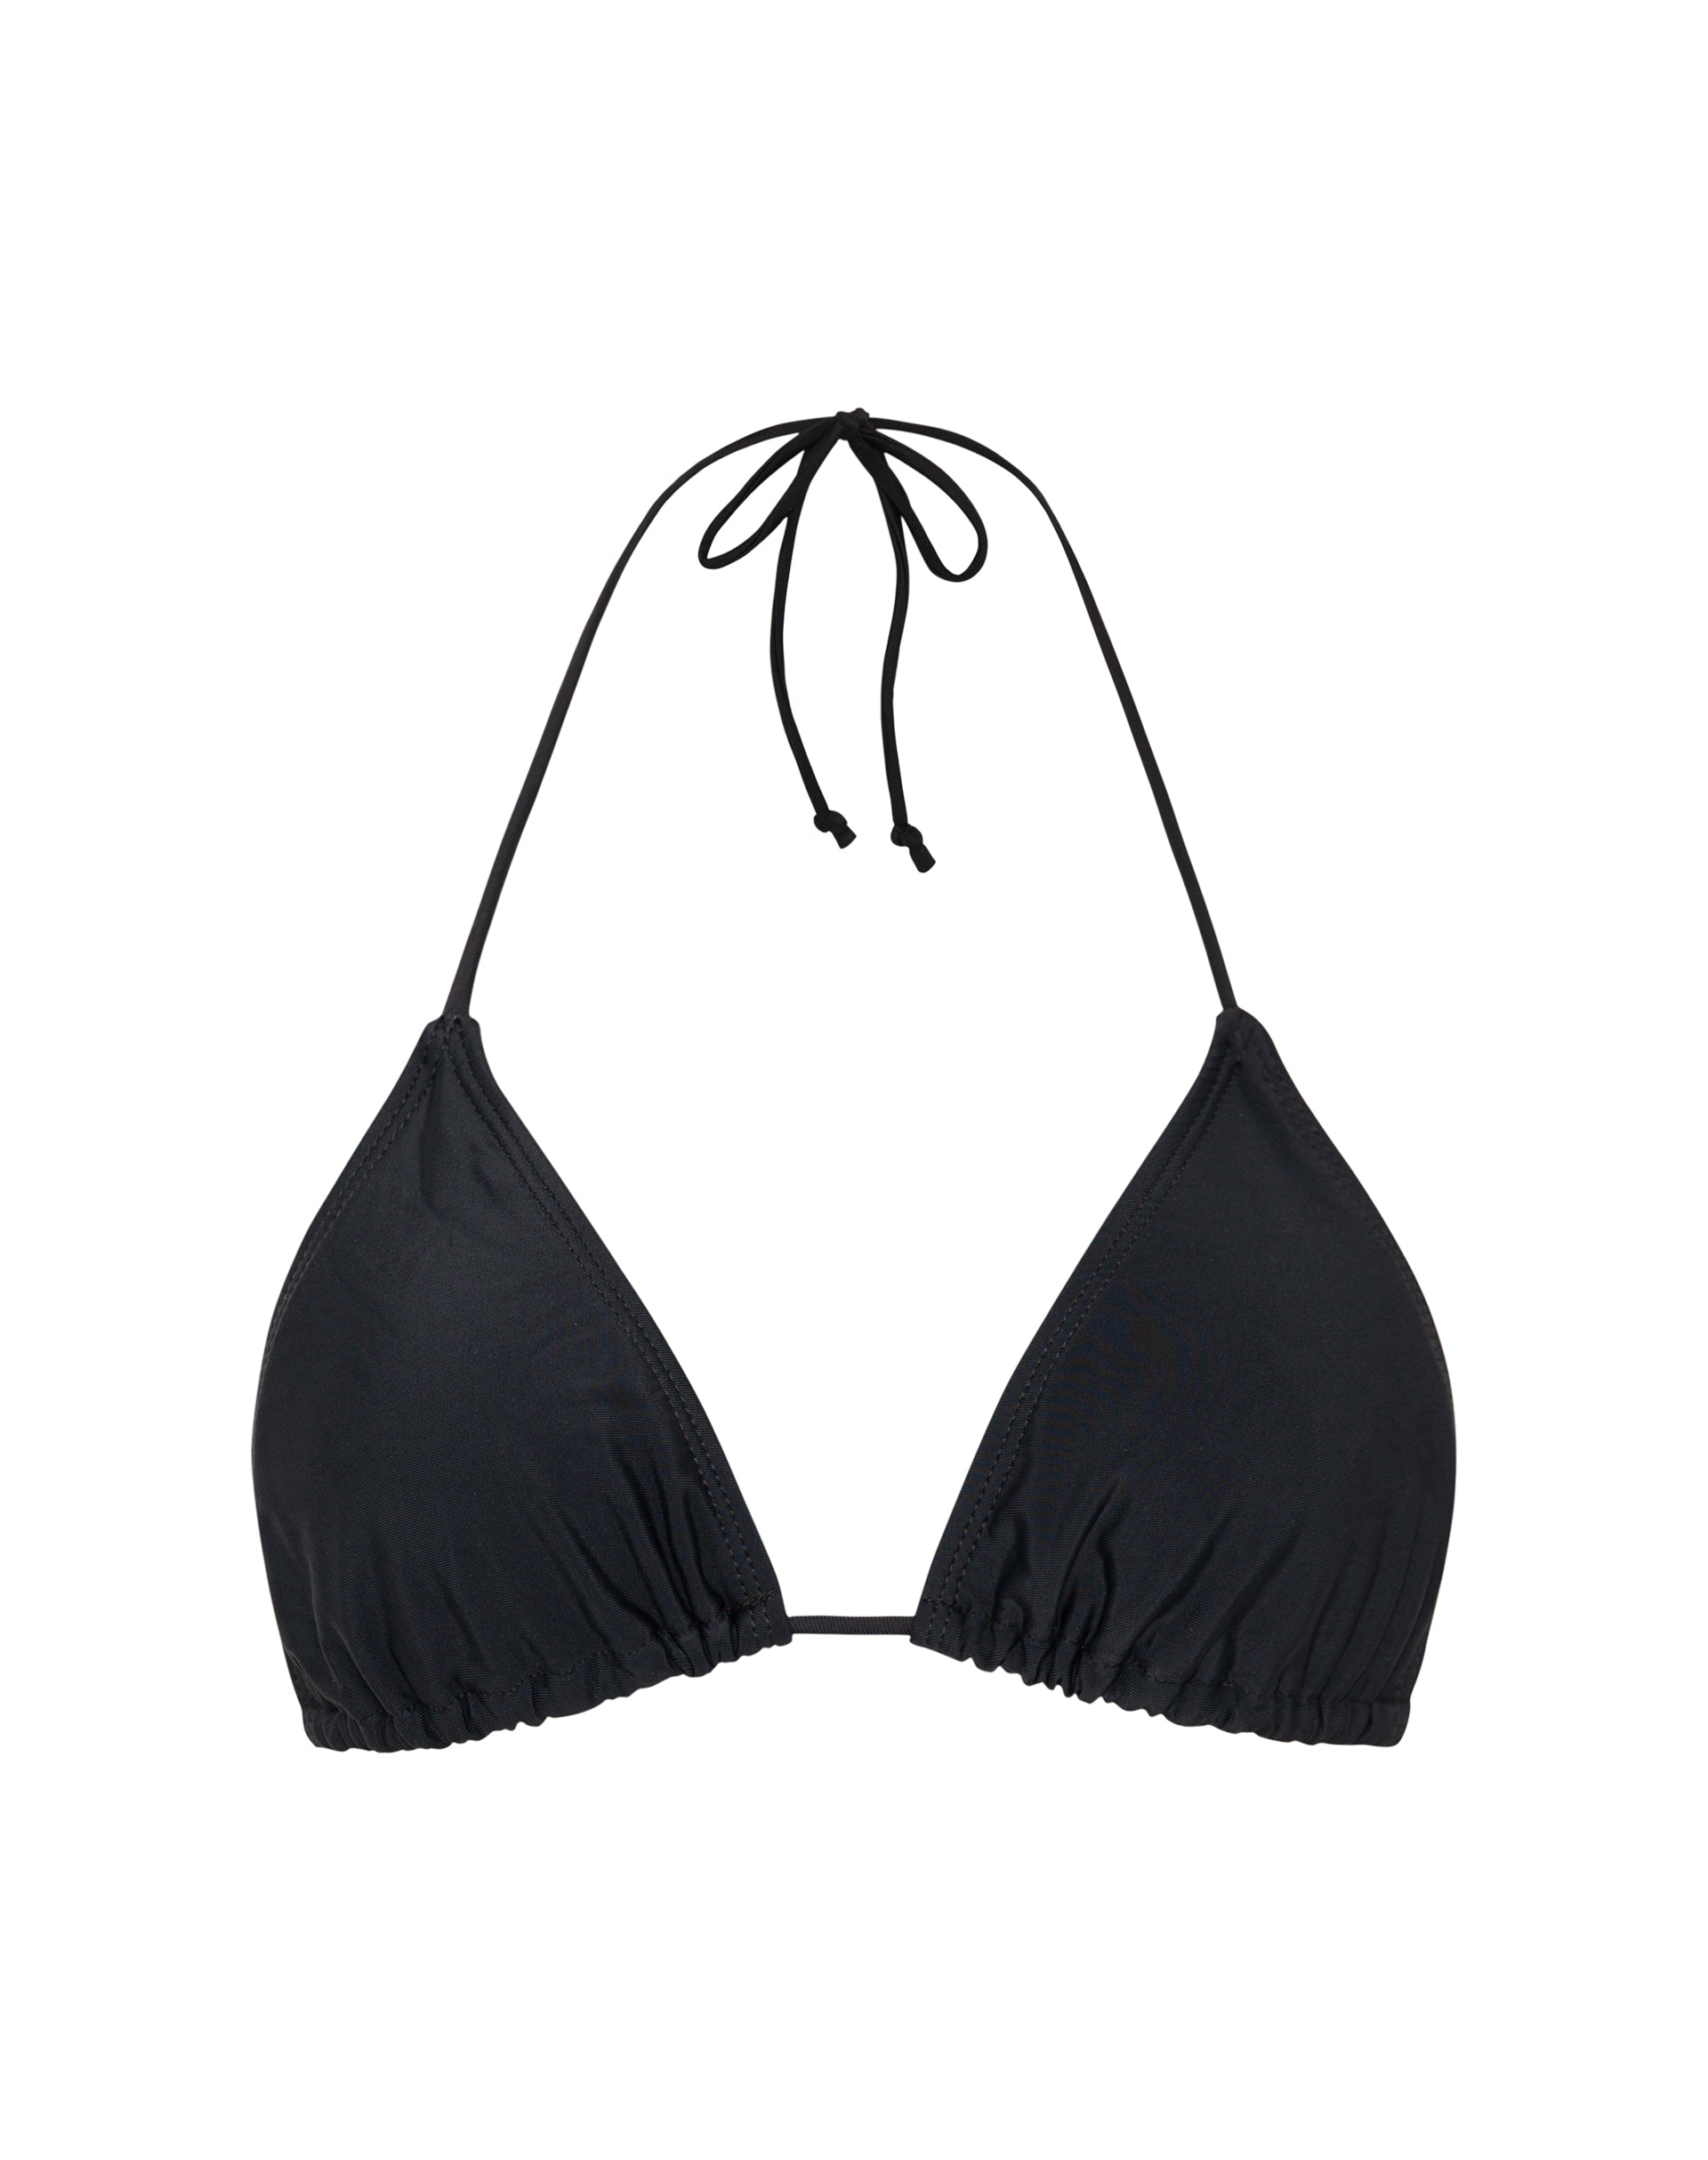 Image of Pami Bikini Top in Black